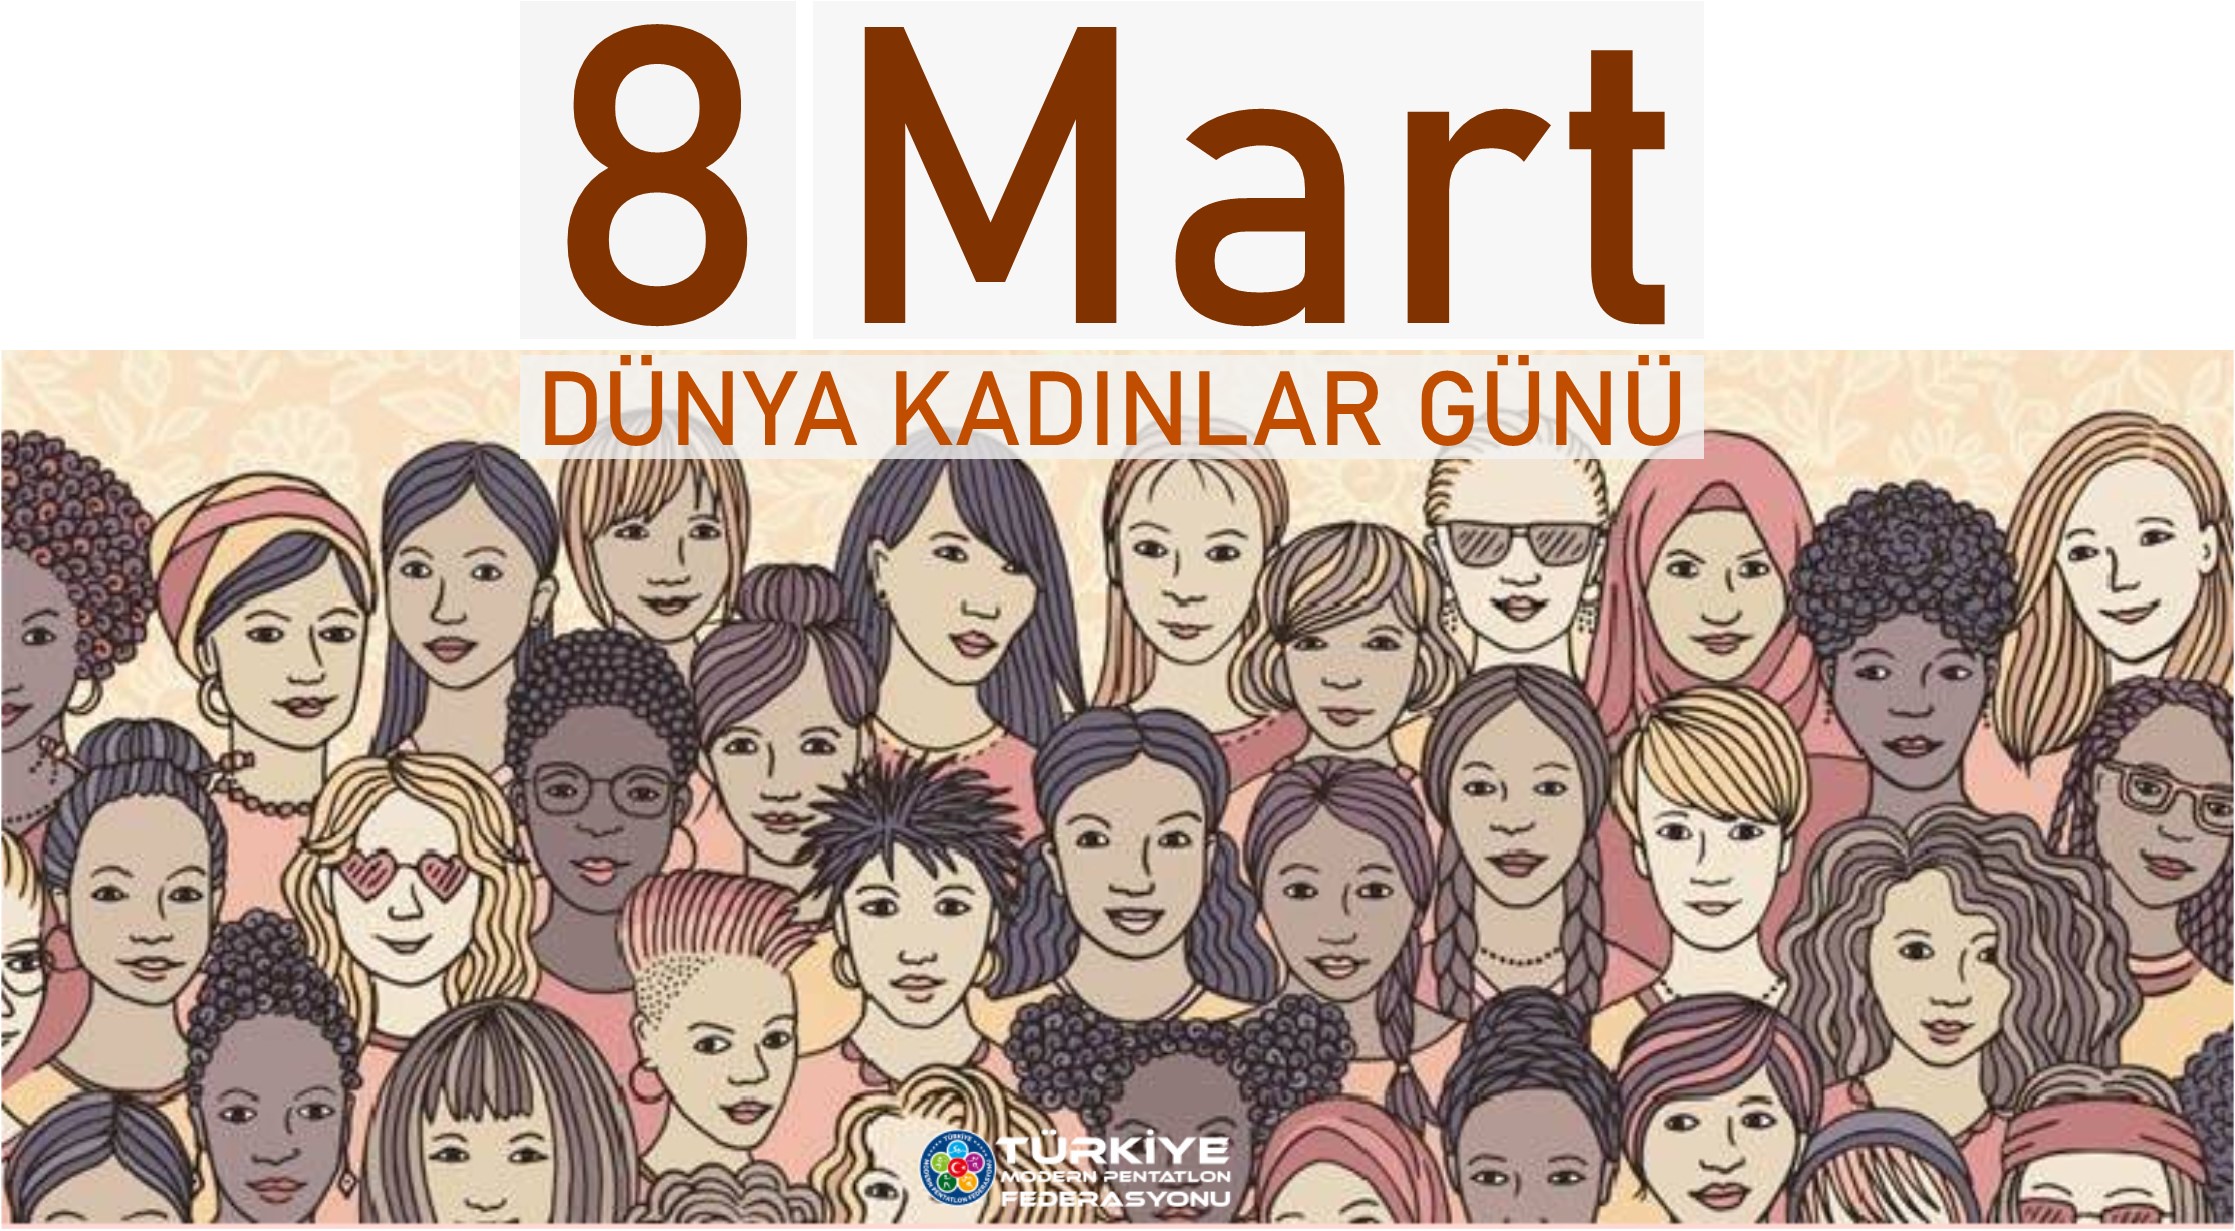 8 Mart Dünya Kadınlar Günü kutlu olsun | Türkiye Modern Pentatlon  Federasyonu Başkanlığı